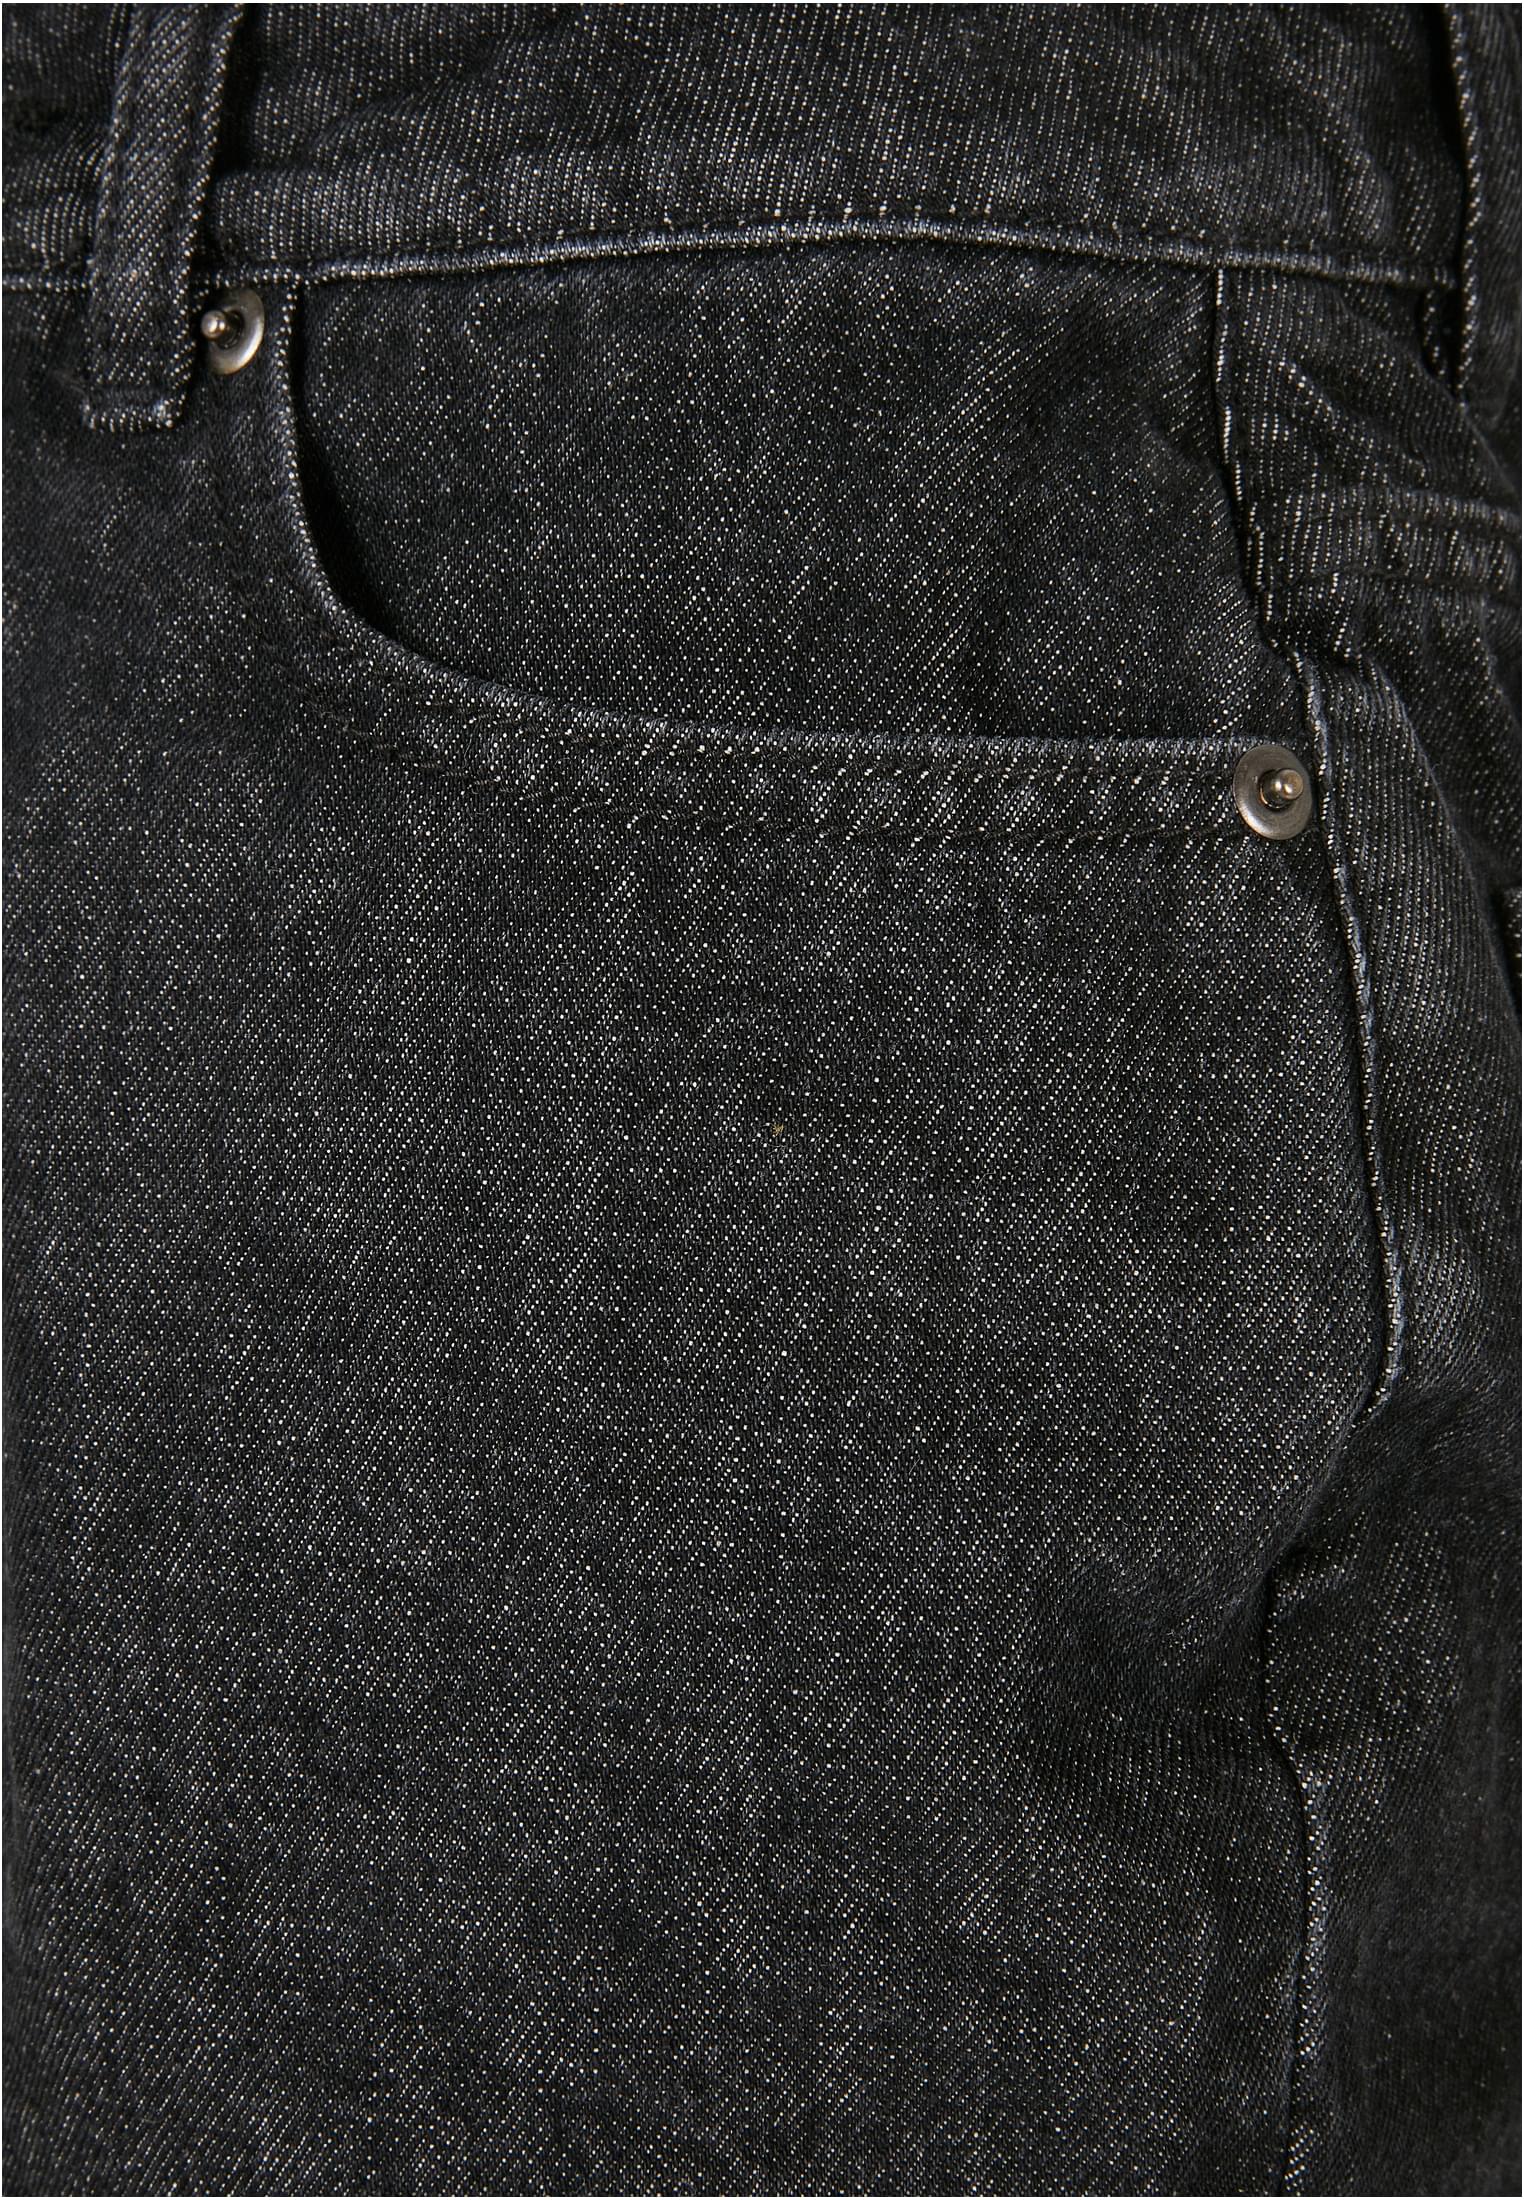 Frauen Ladies High Waist Boyfriend Shorts in Farbe black washed